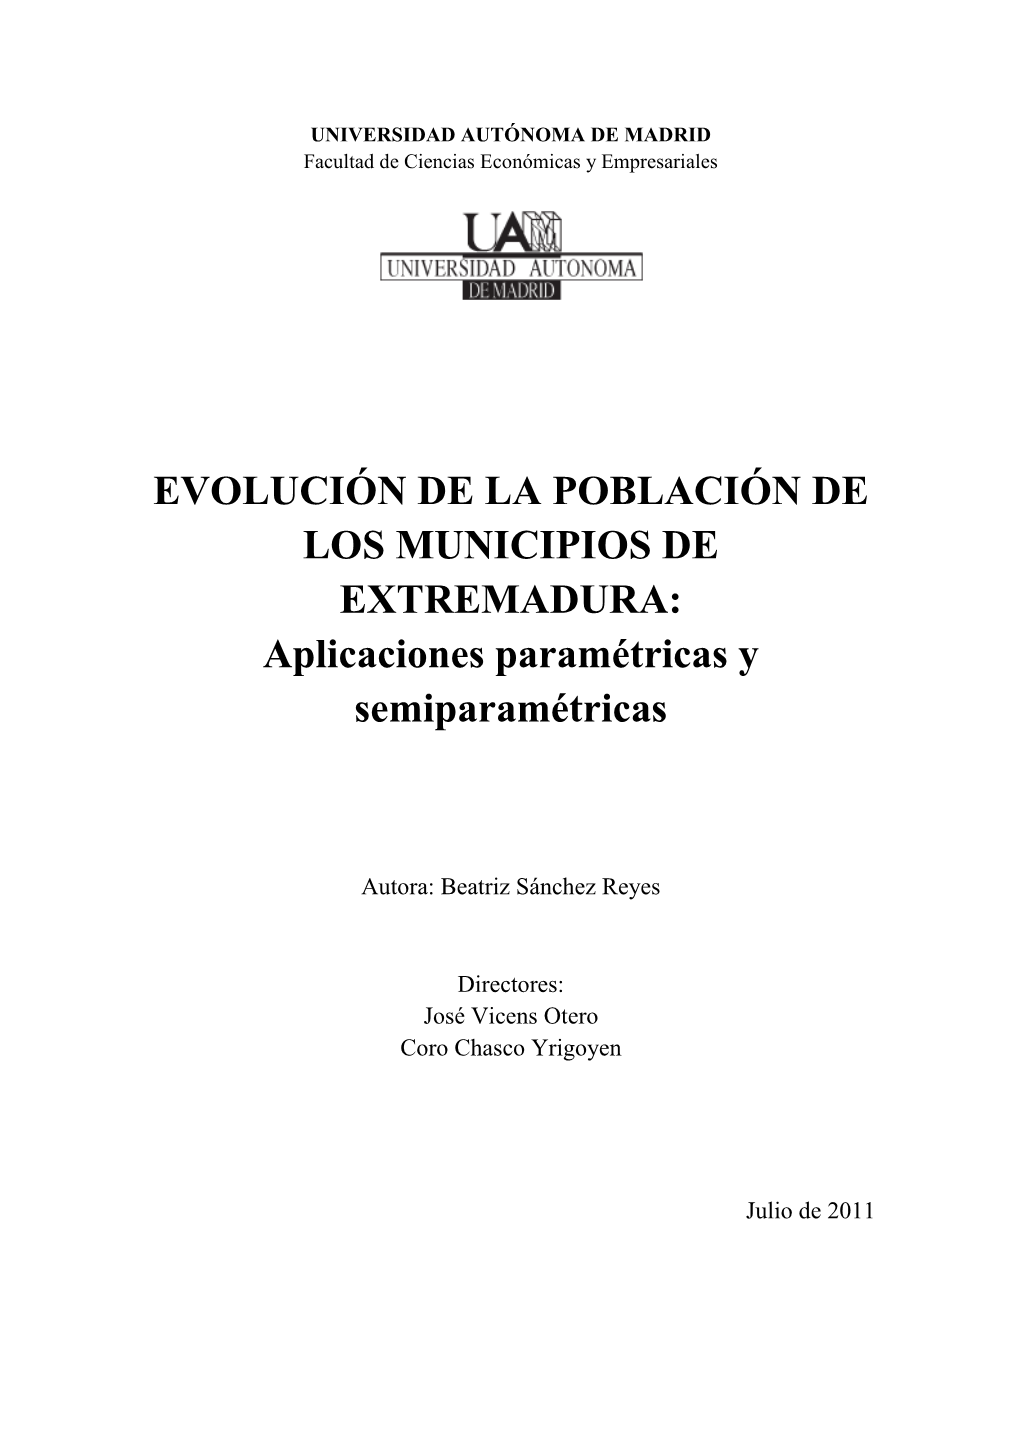 EVOLUCIÓN DE LA POBLACIÓN DE LOS MUNICIPIOS DE EXTREMADURA: Aplicaciones Paramétricas Y Semiparamétricas